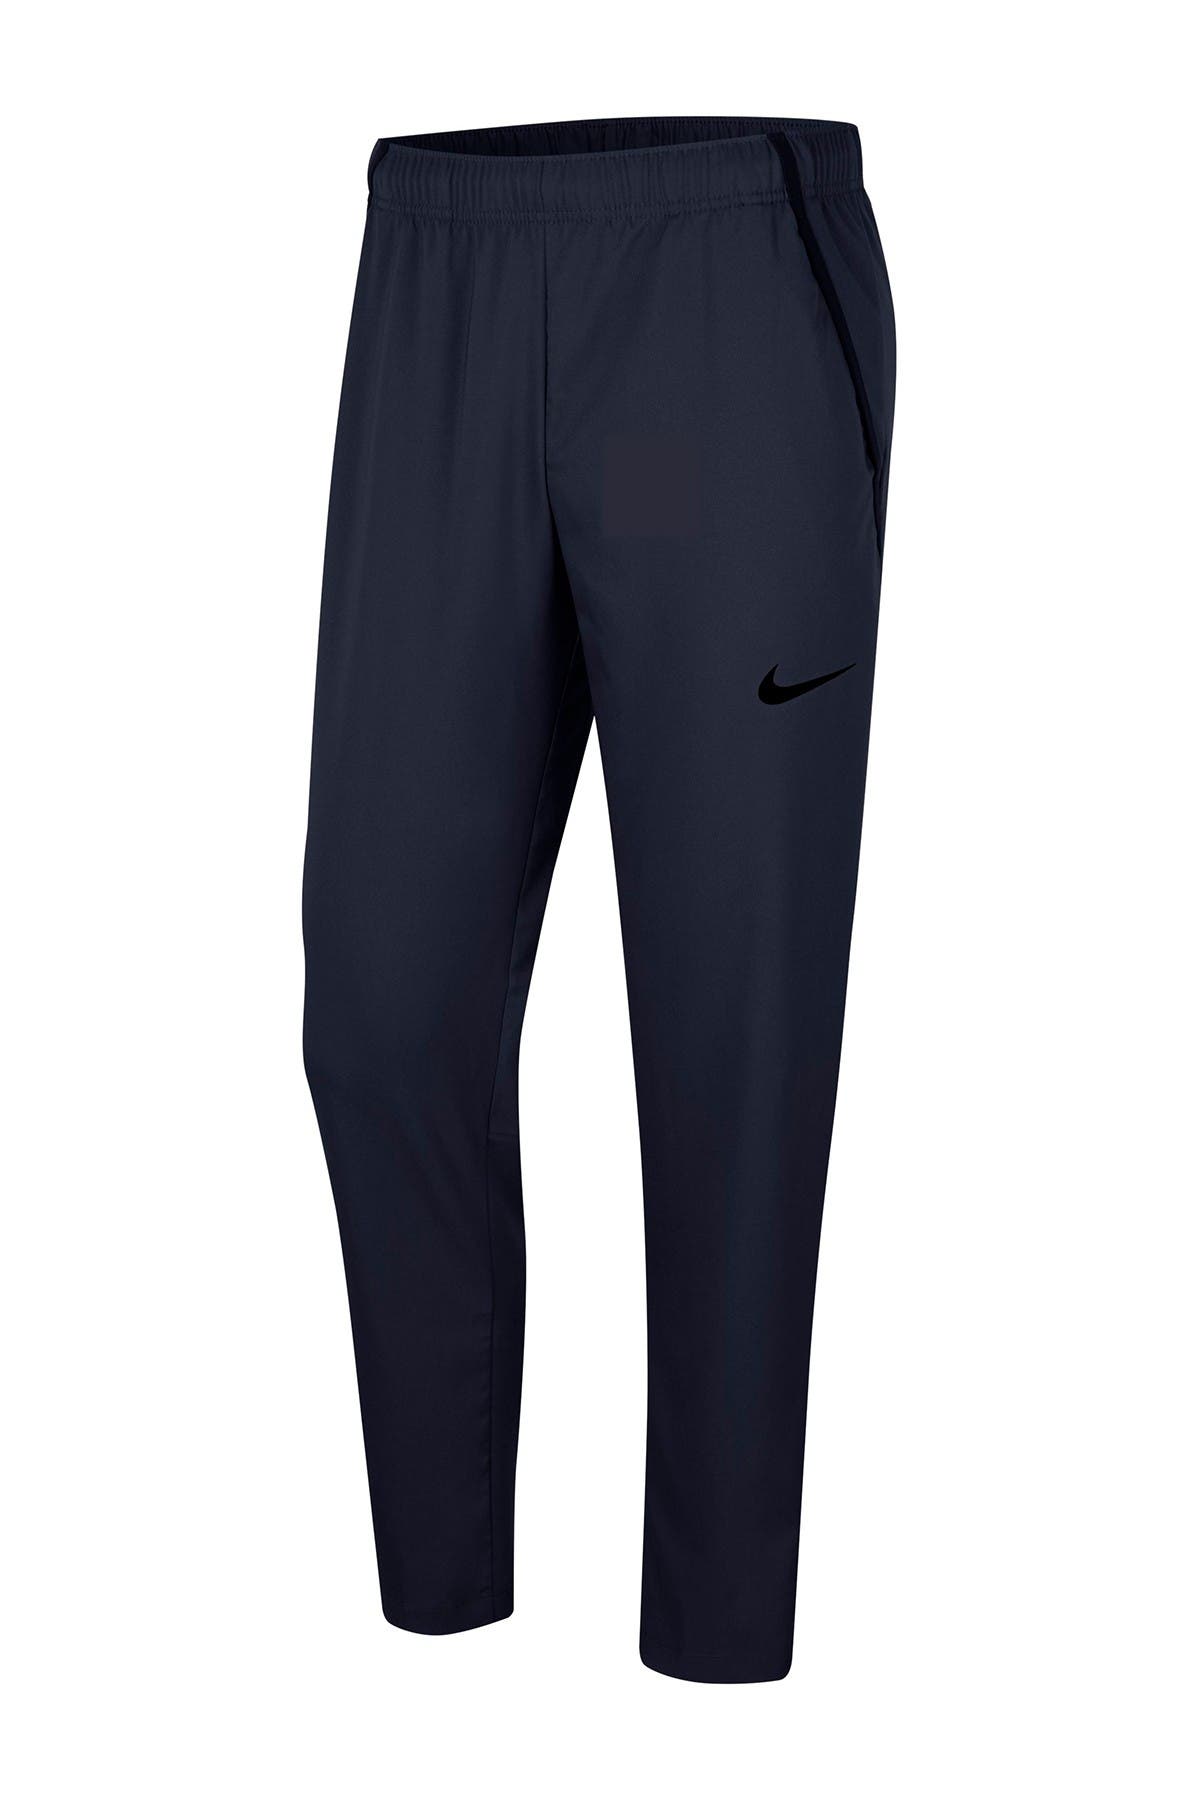 Nike | Dri-FIT Woven Training Pants 